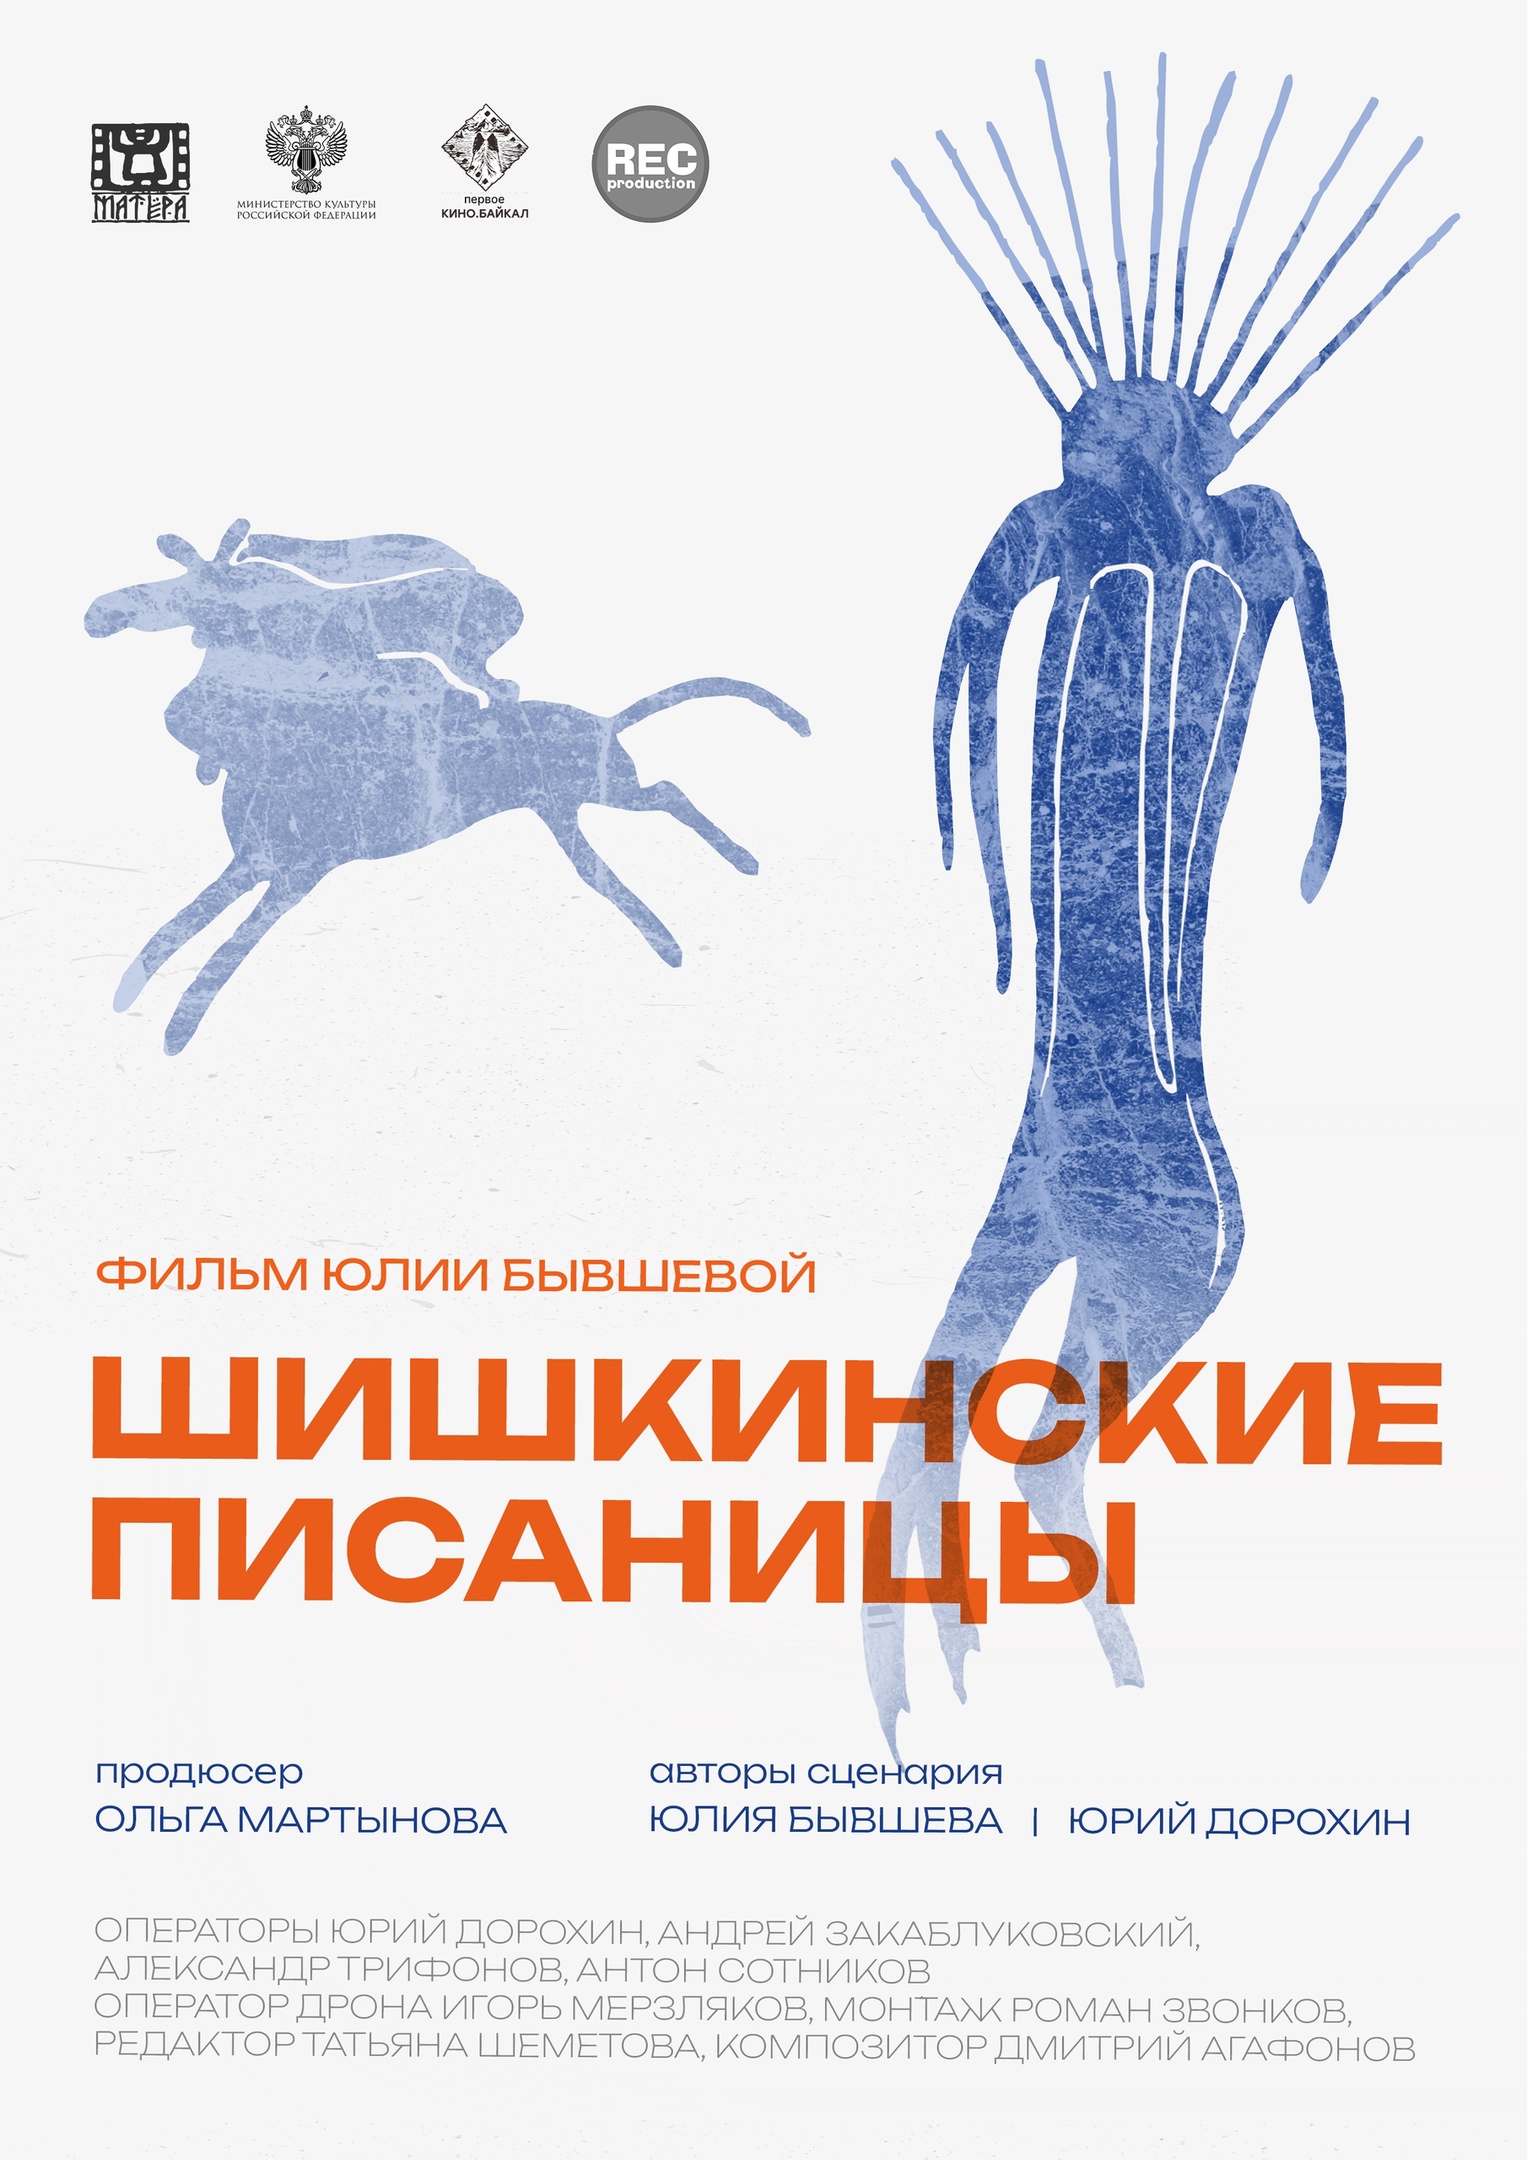 Иркутский киноклуб завершает сезон показом фильма “Шишкинские писаницы”